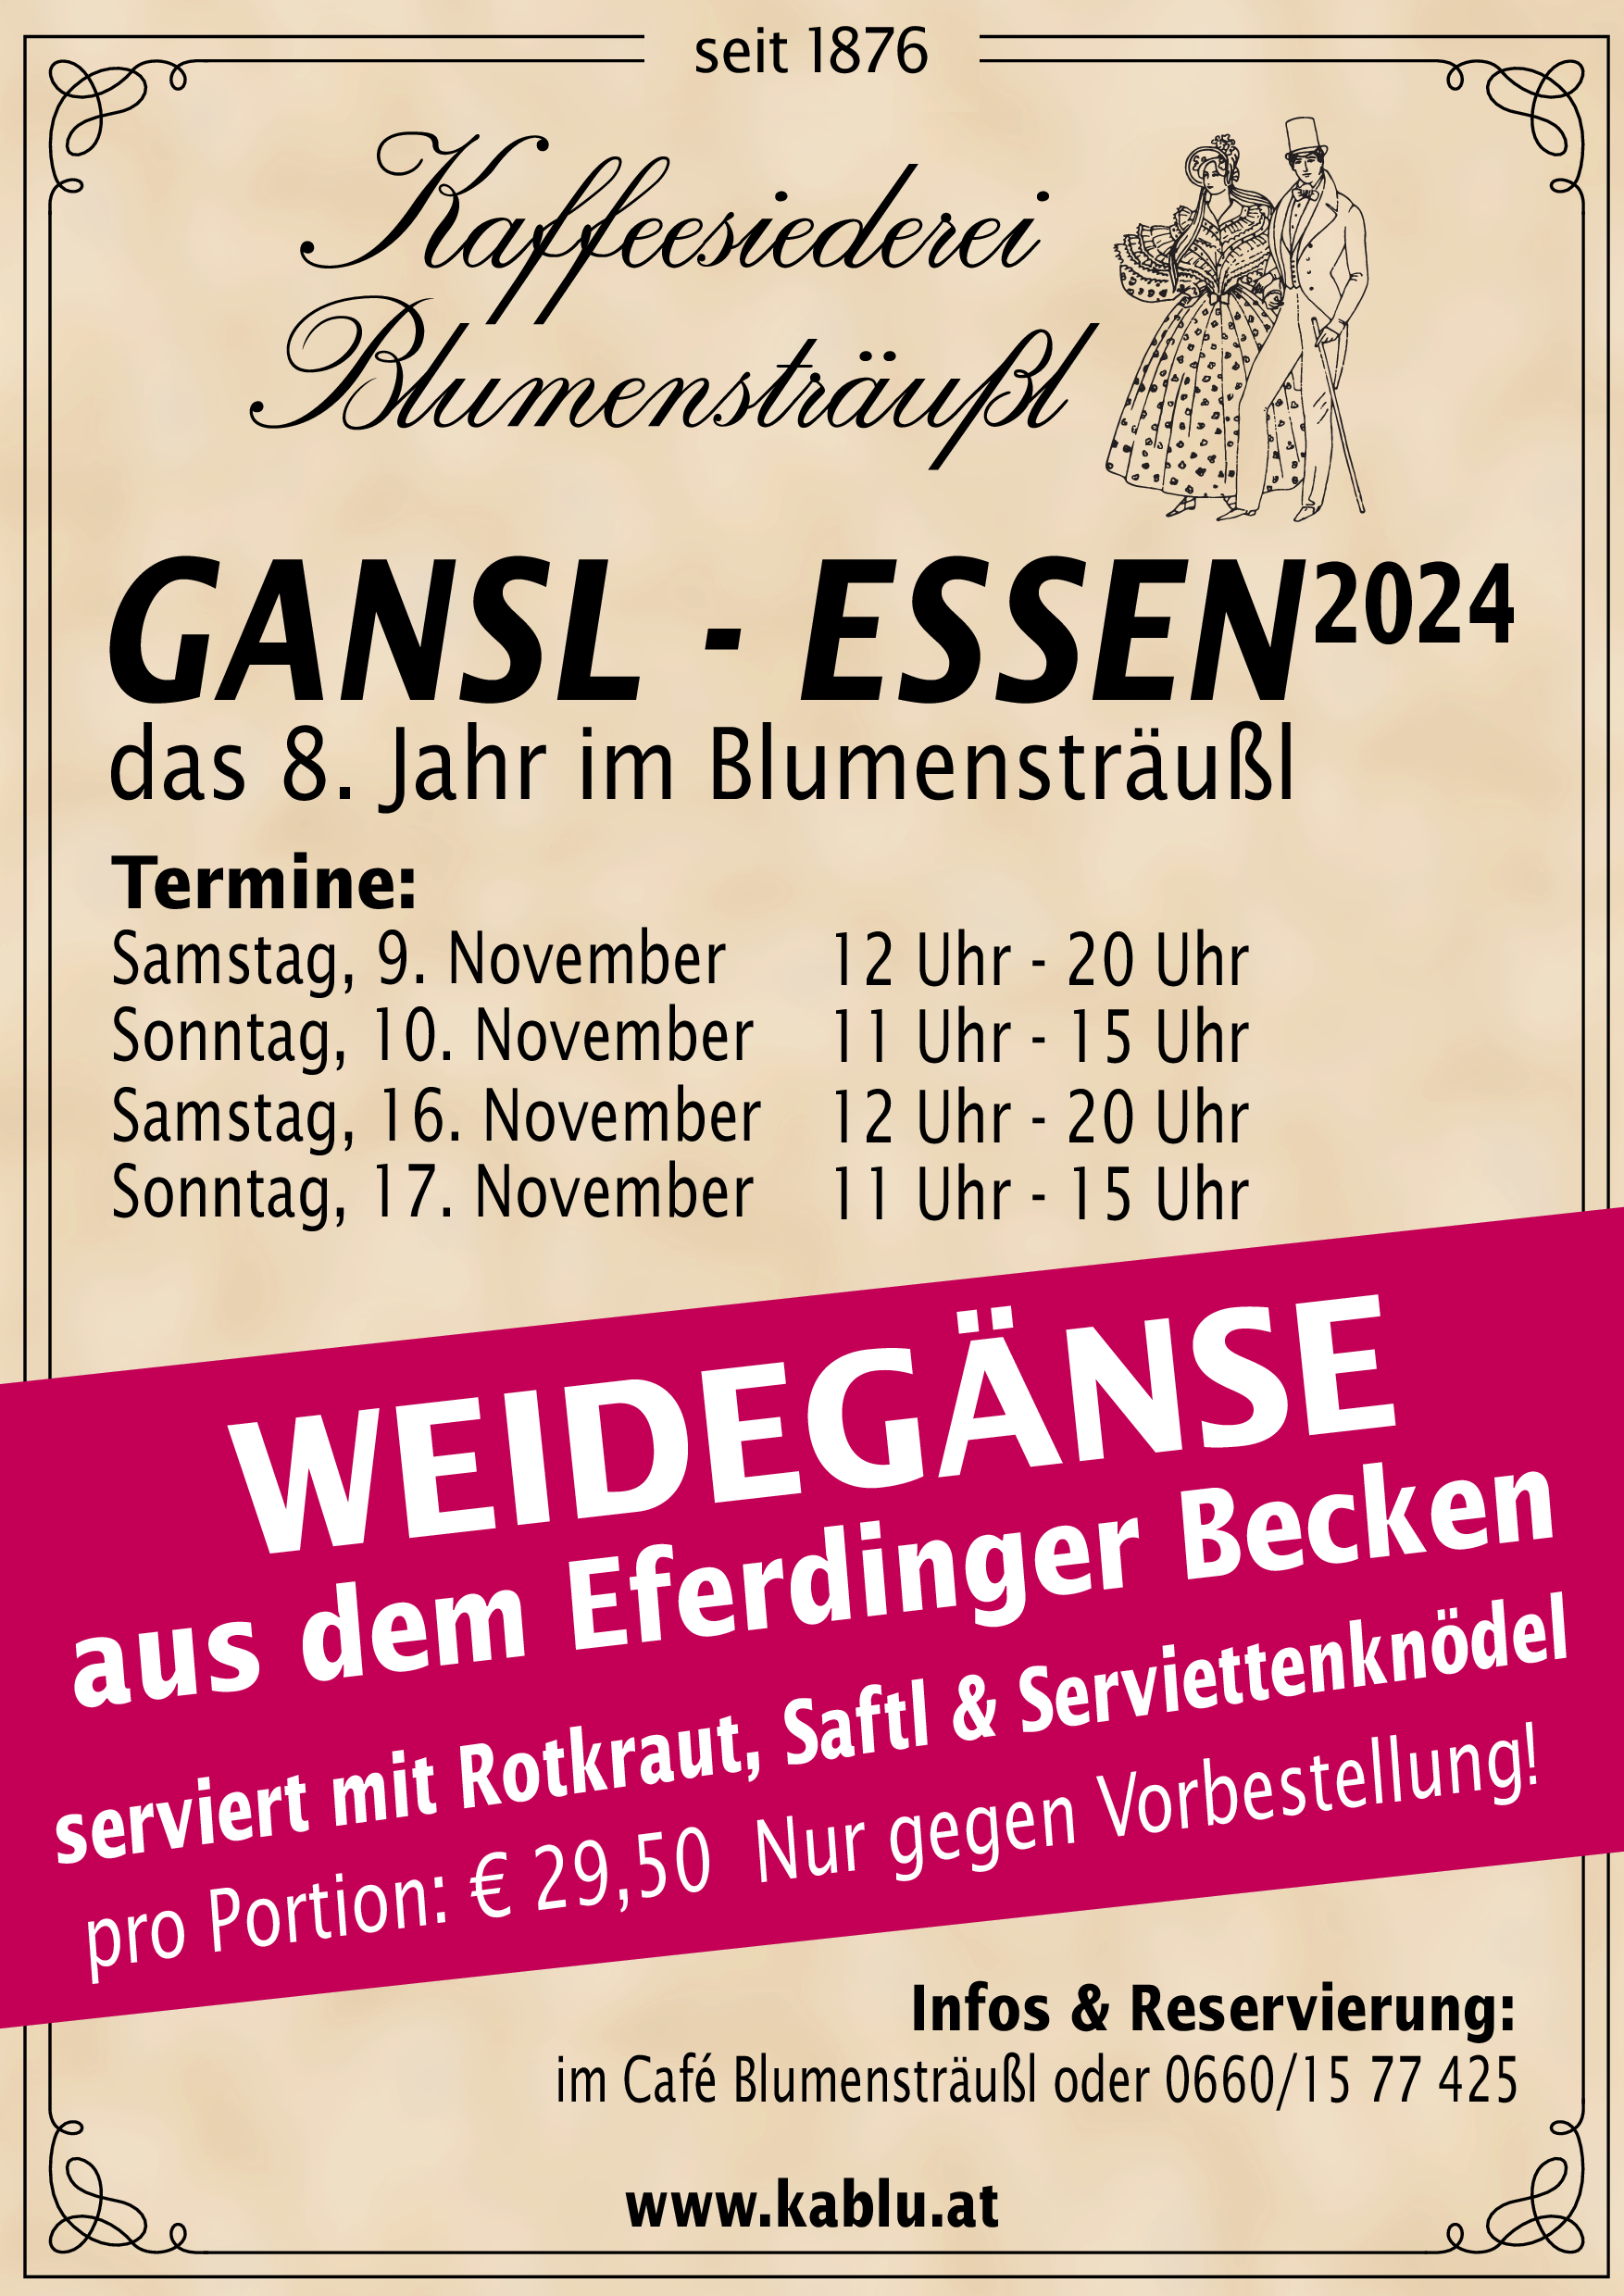 Gansl-Essen 2024